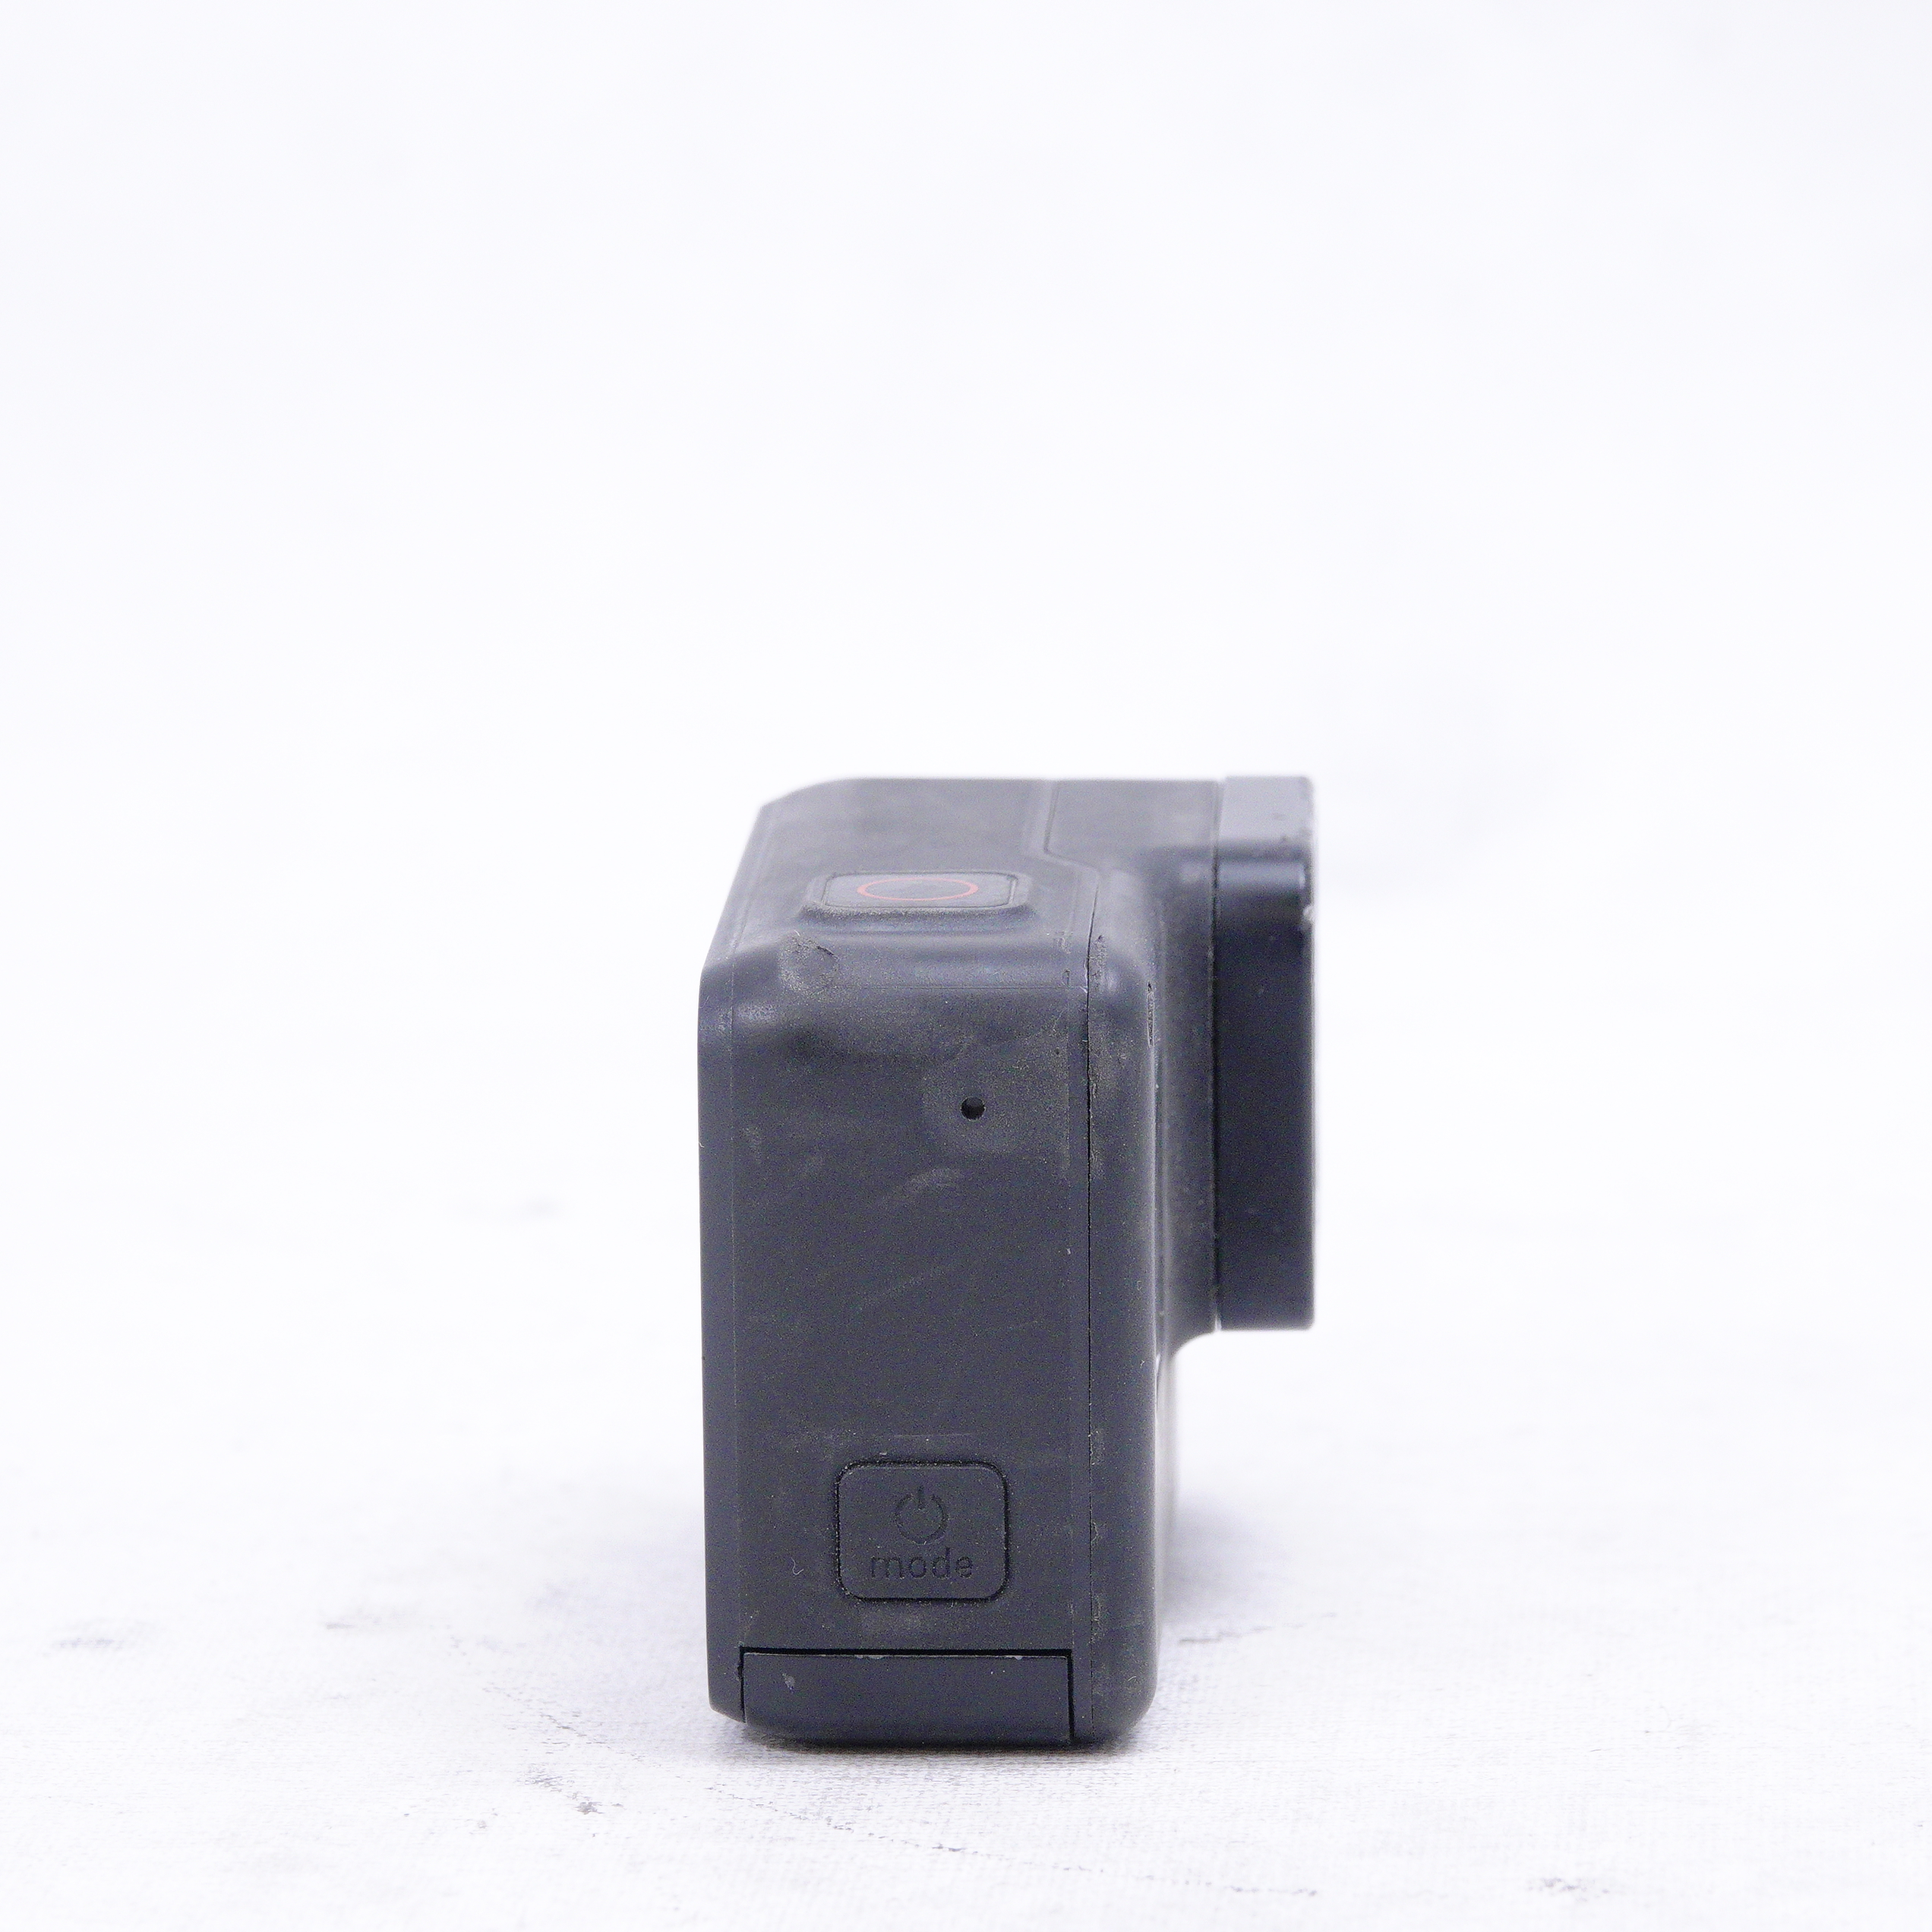 GoPRO 7 Black con 2 baterías y accesorios - Usado